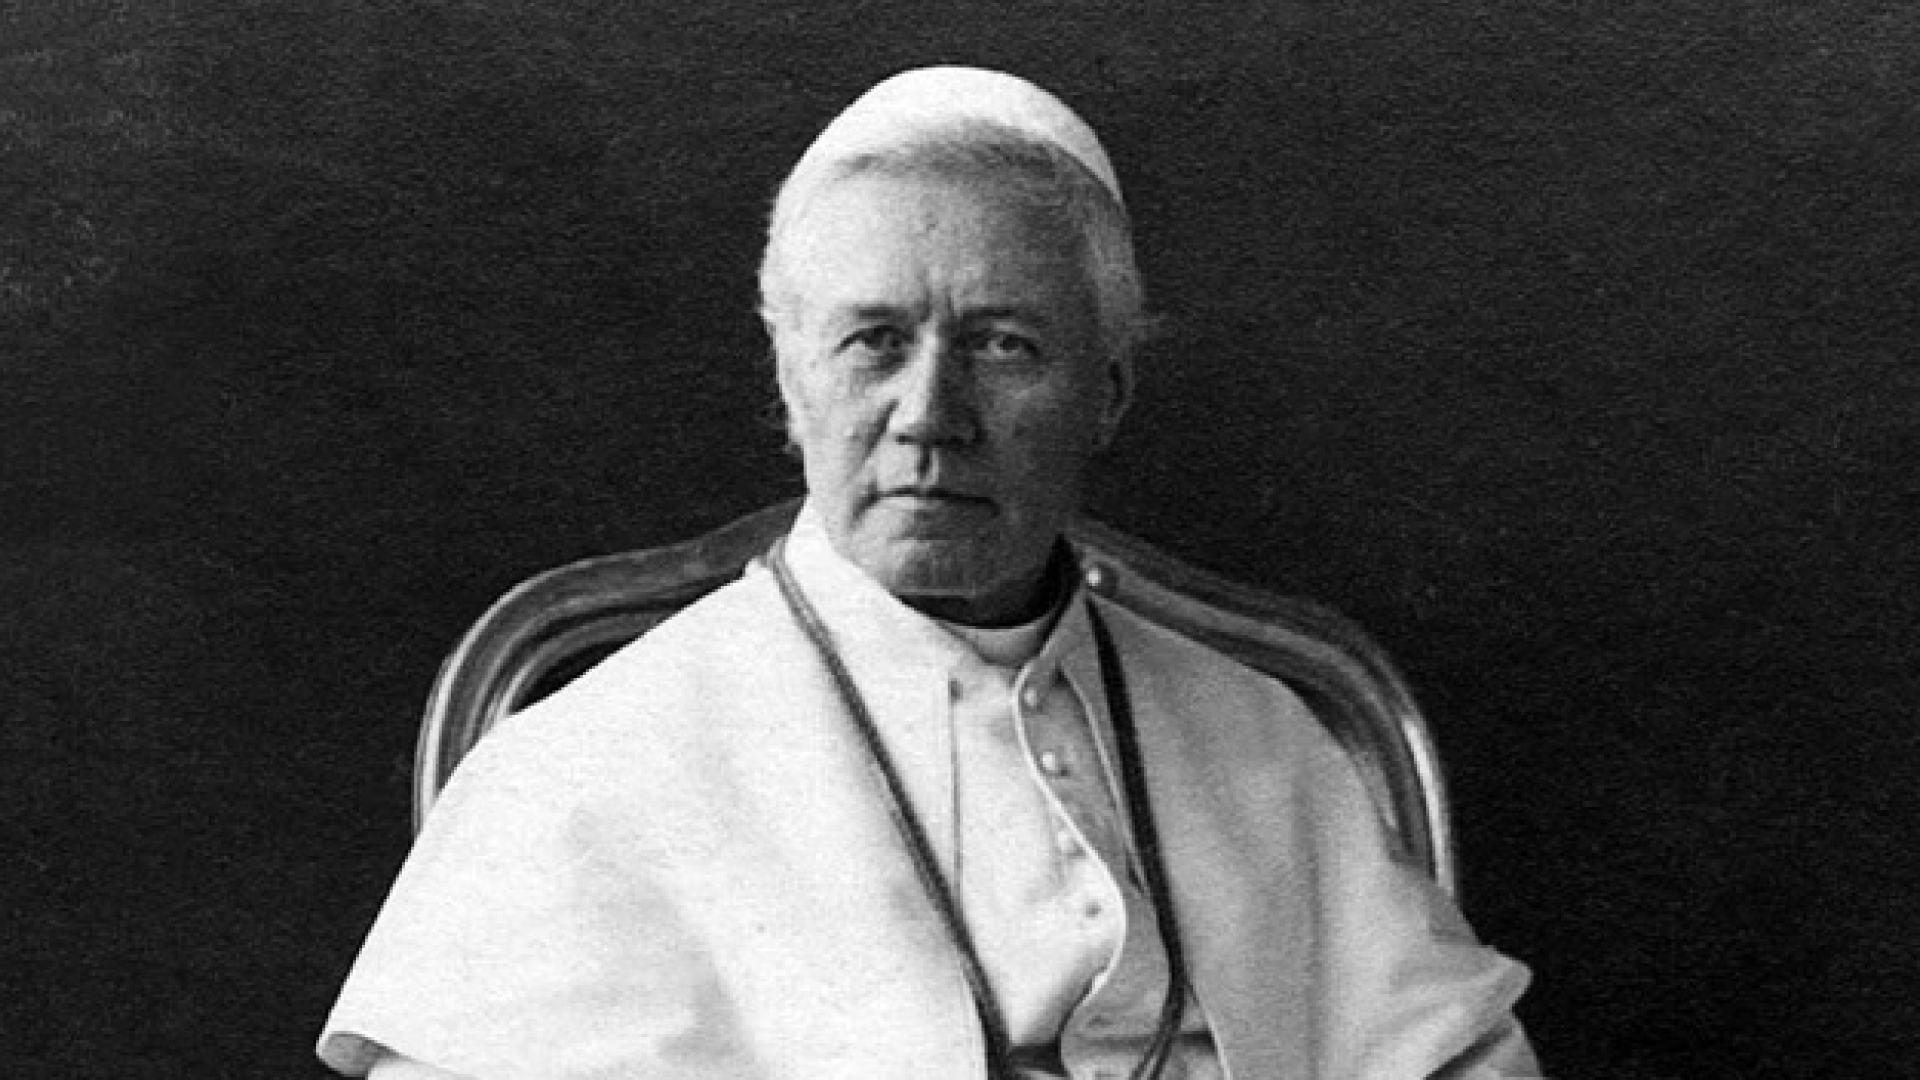 Pope St Pius X b&w